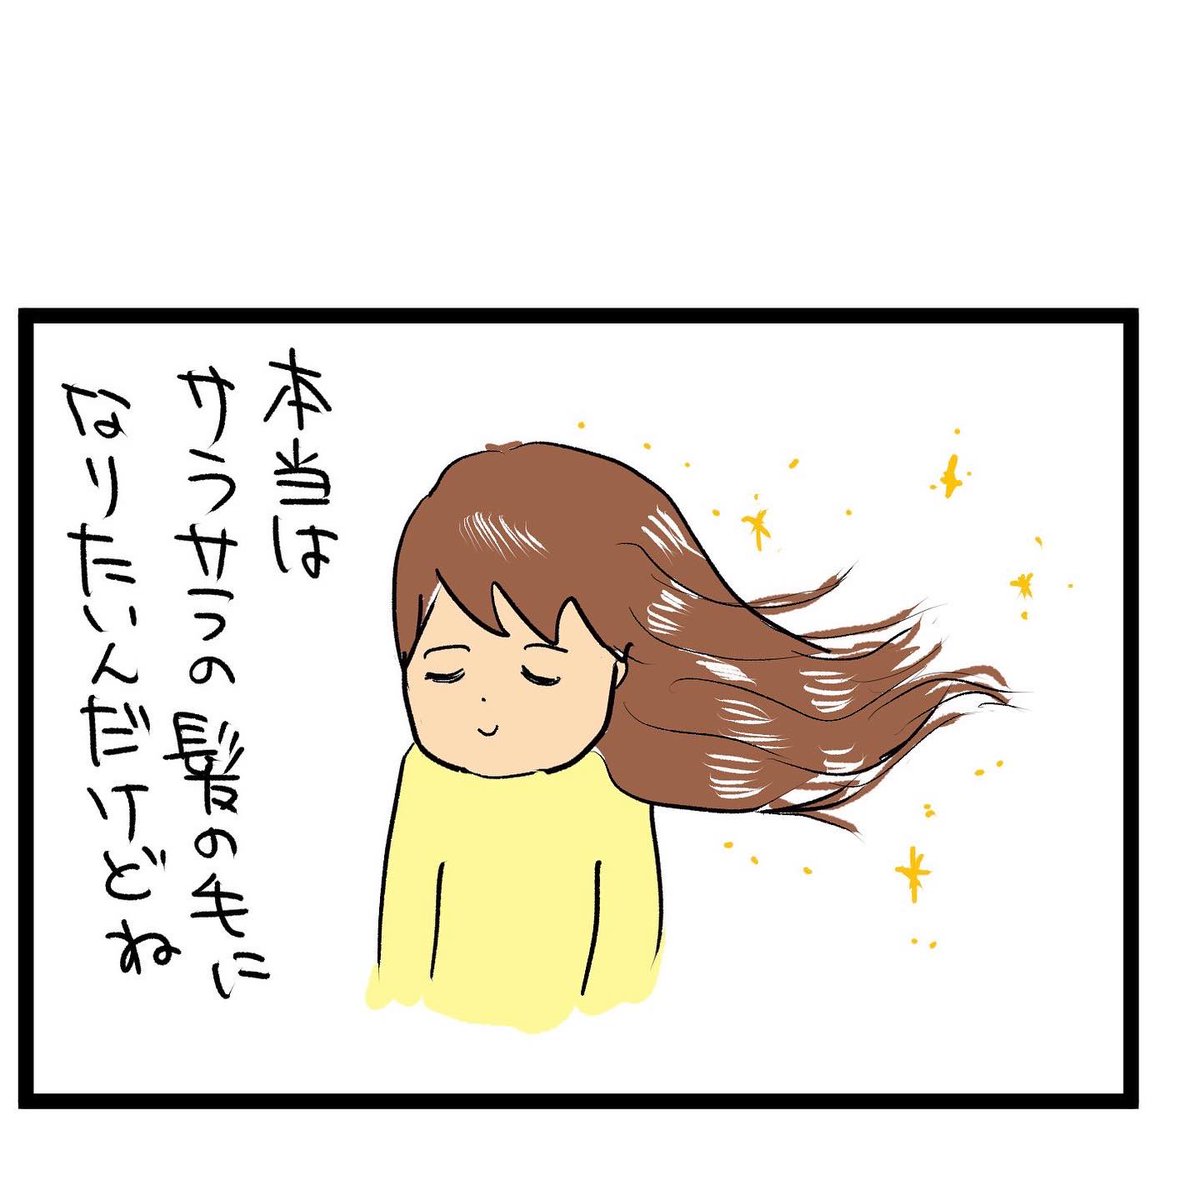 #四コマ漫画
#髪の毛 